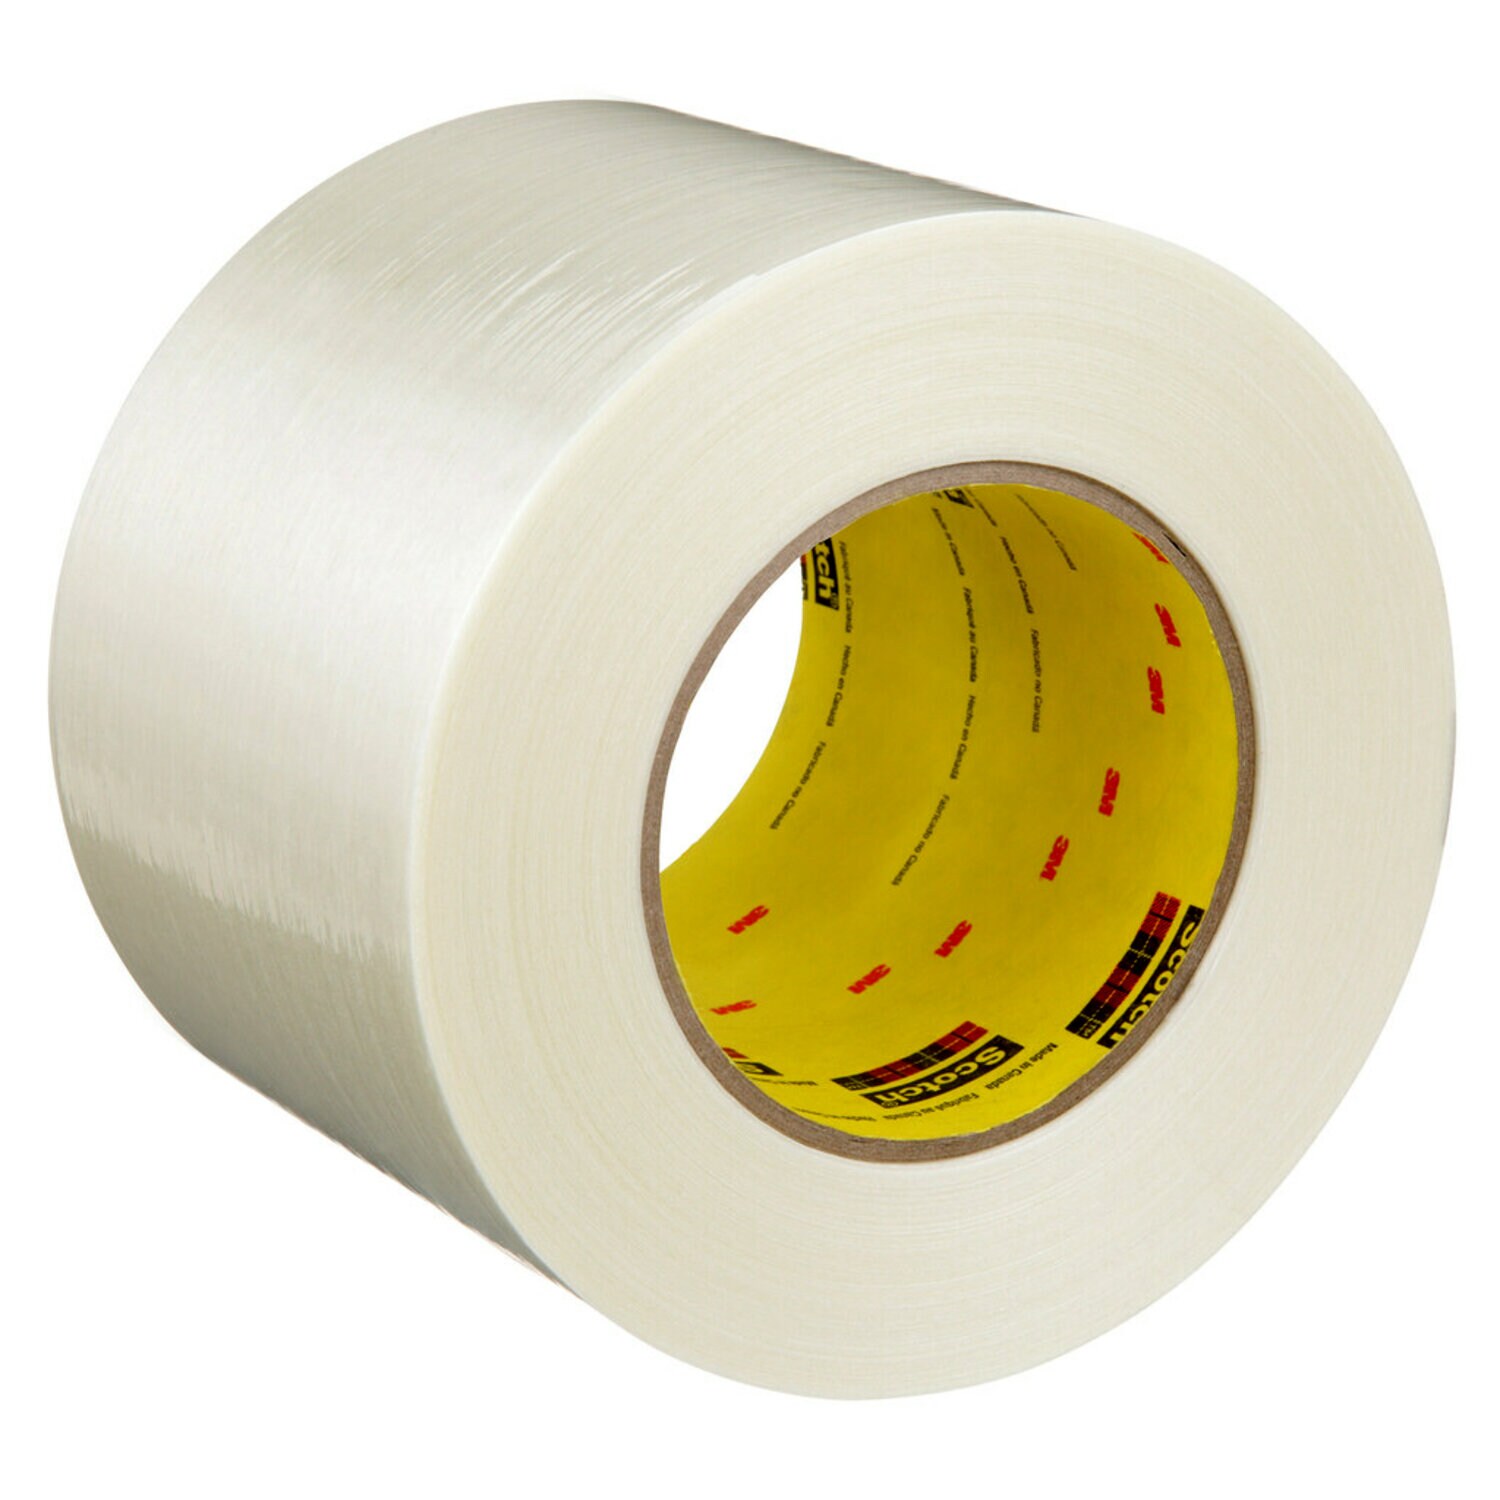 7000136836 - Scotch Filament Tape 898, Clear, 96 mm x 55 m, 6.6 mil, 12 rolls per
case